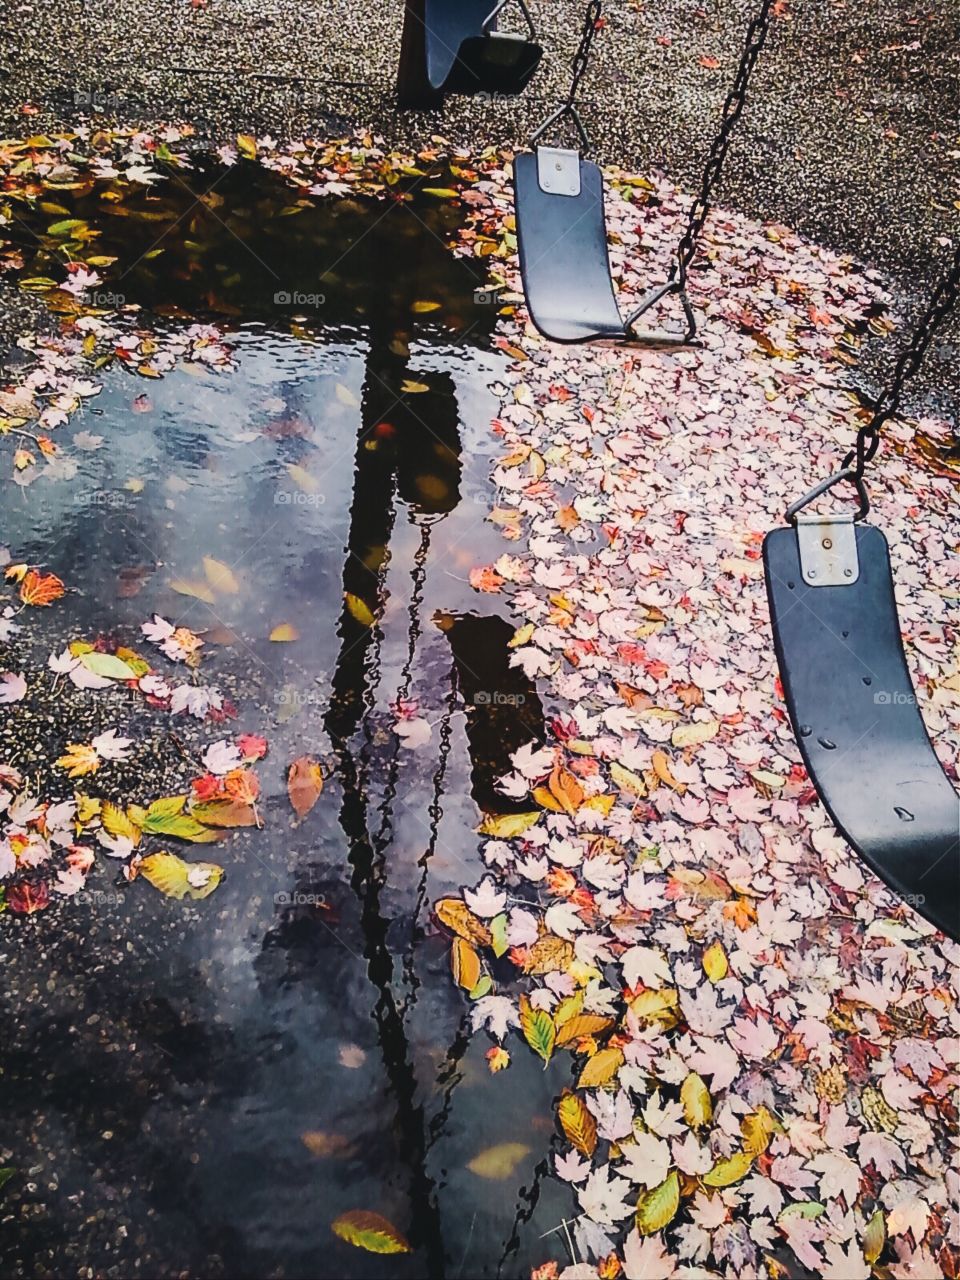 Autumn playground, 

Autumn rain reflections,
Foap Mission 